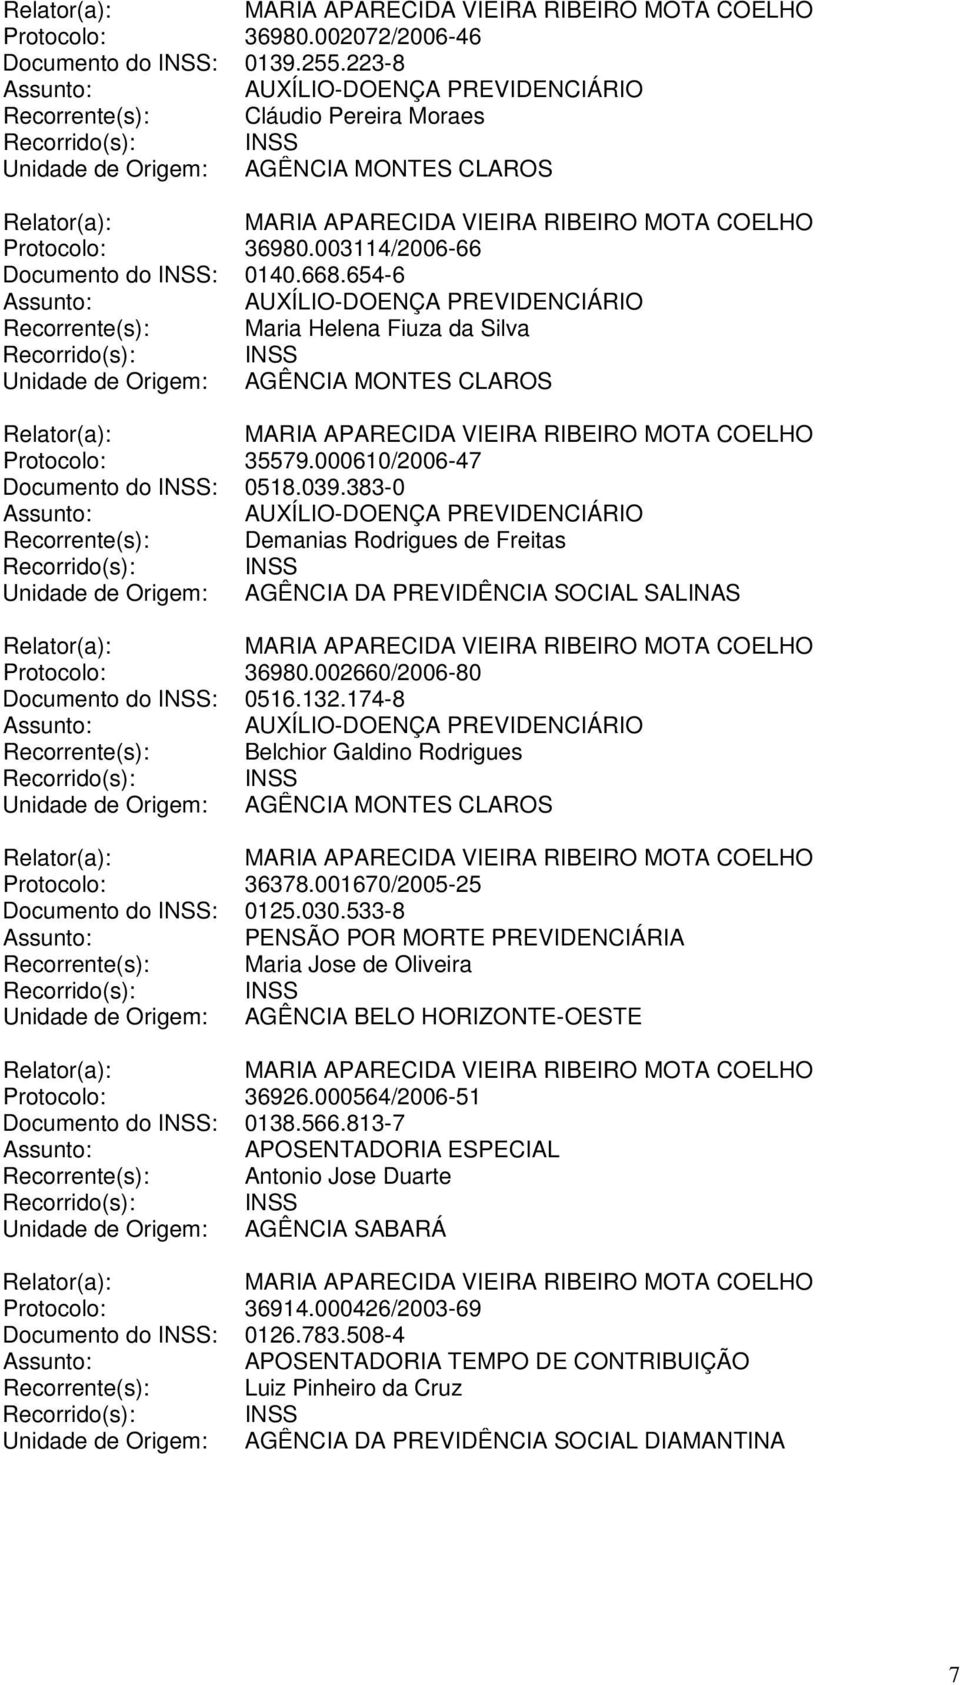 383-0 Recorrente(s): Demanias Rodrigues de Freitas Unidade de Origem: AGÊNCIA DA PREVIDÊNCIA SOCIAL SALINAS Protocolo: 36980.002660/2006-80 Documento do INSS: 0516.132.